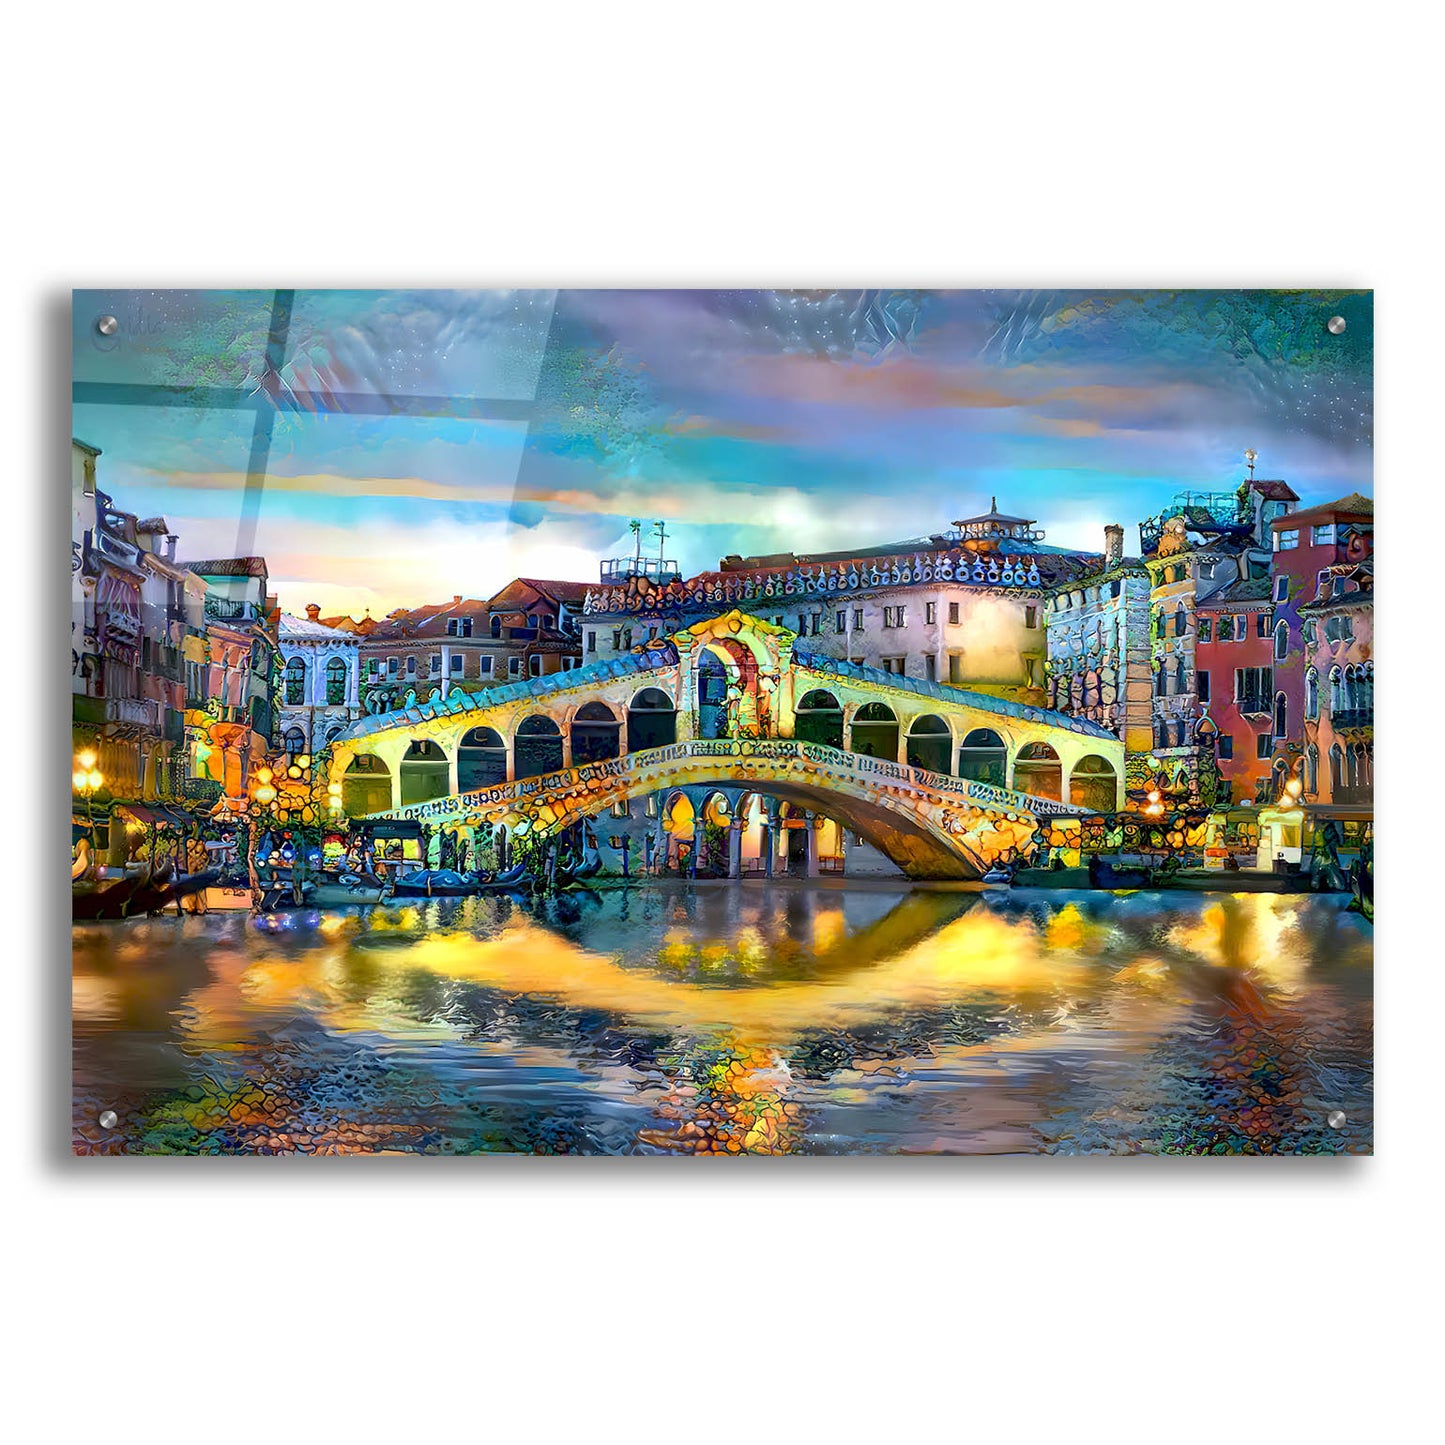 Epic Art 'Venice Italy Rialto Bridge at night' by Pedro Gavidia, Acrylic Glass Wall Art,36x24